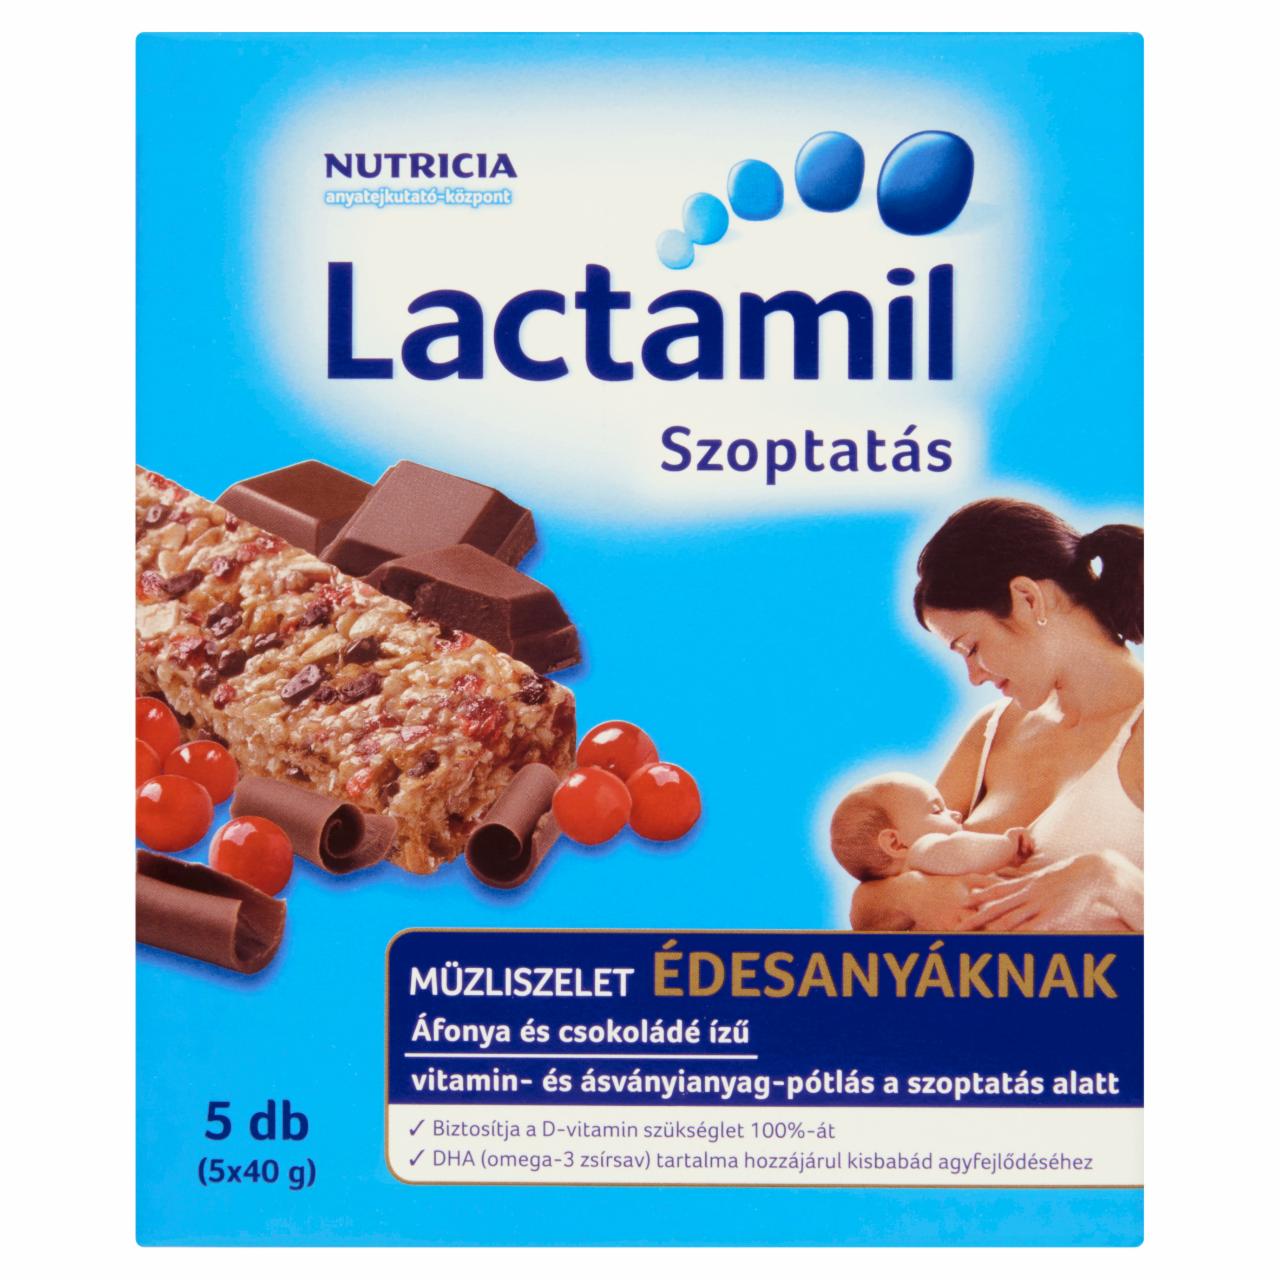 Képek - Lactamil Szoptatás áfonya és csokoládé ízű müzliszelet édesanyáknak 5 db 200 g